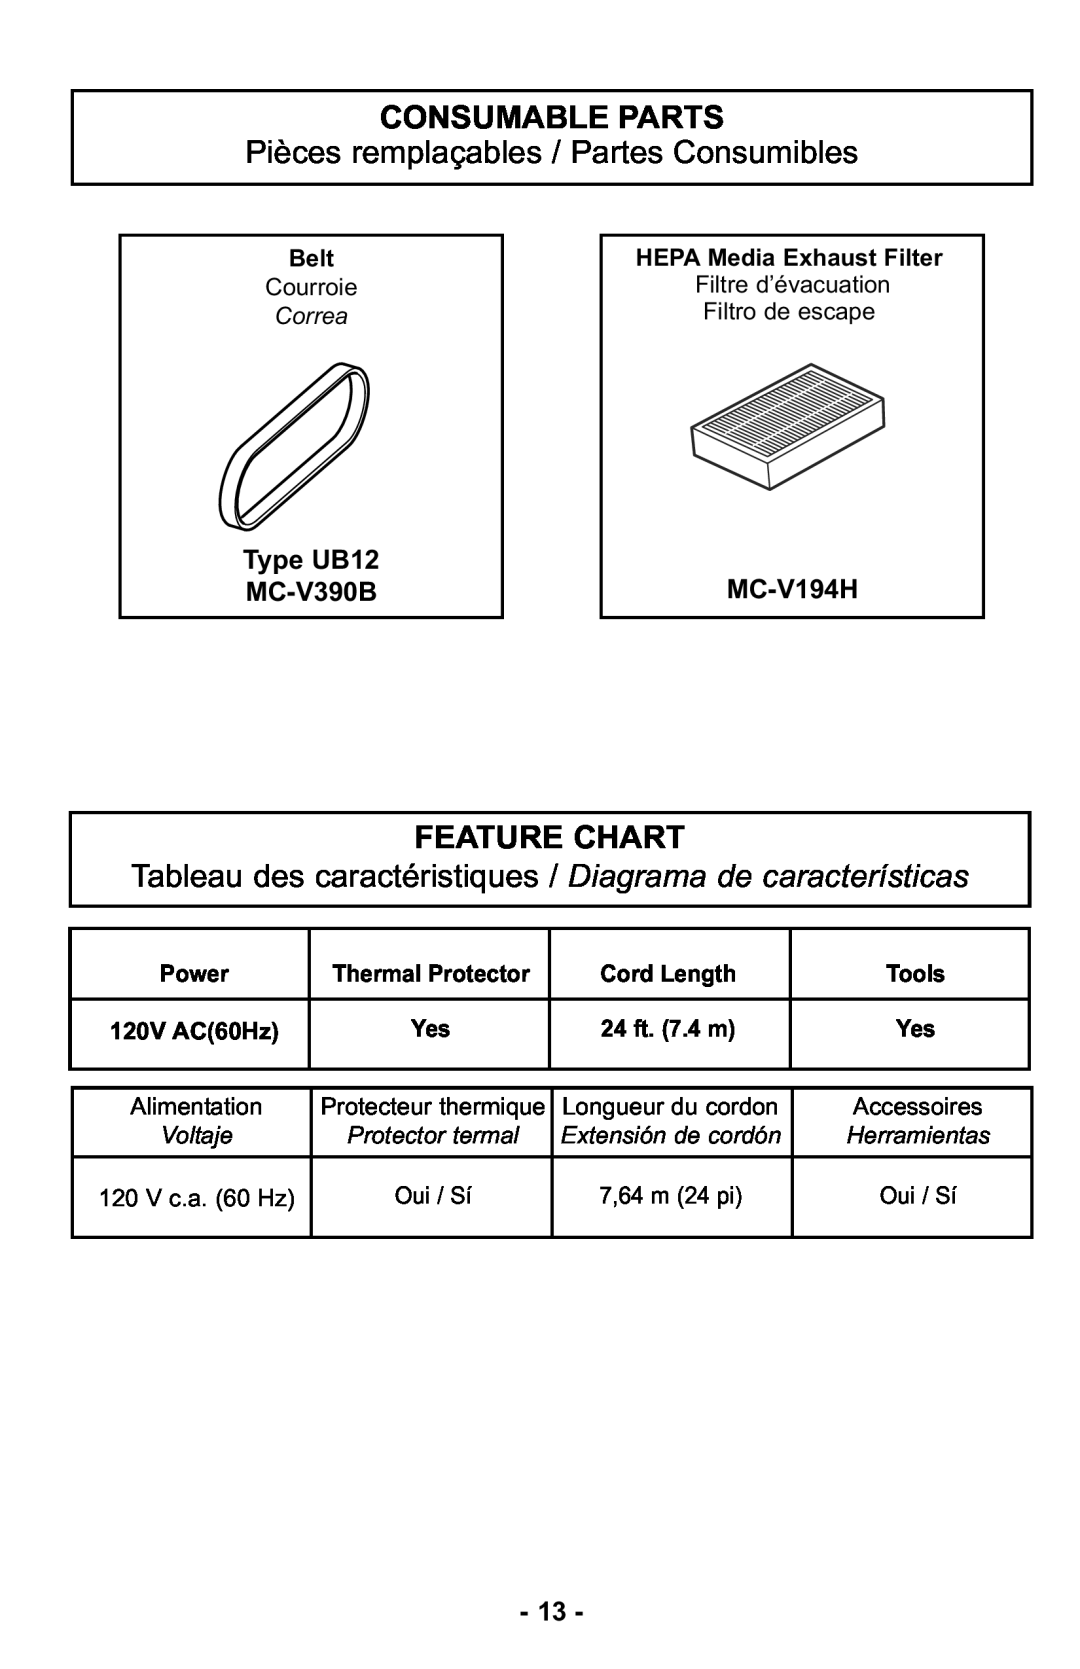 Panasonic MC-UL425 Consumable Parts, Pièces remplaçables / Partes Consumibles, Feature Chart, Type UB12 MC-V390B, MC-V194H 